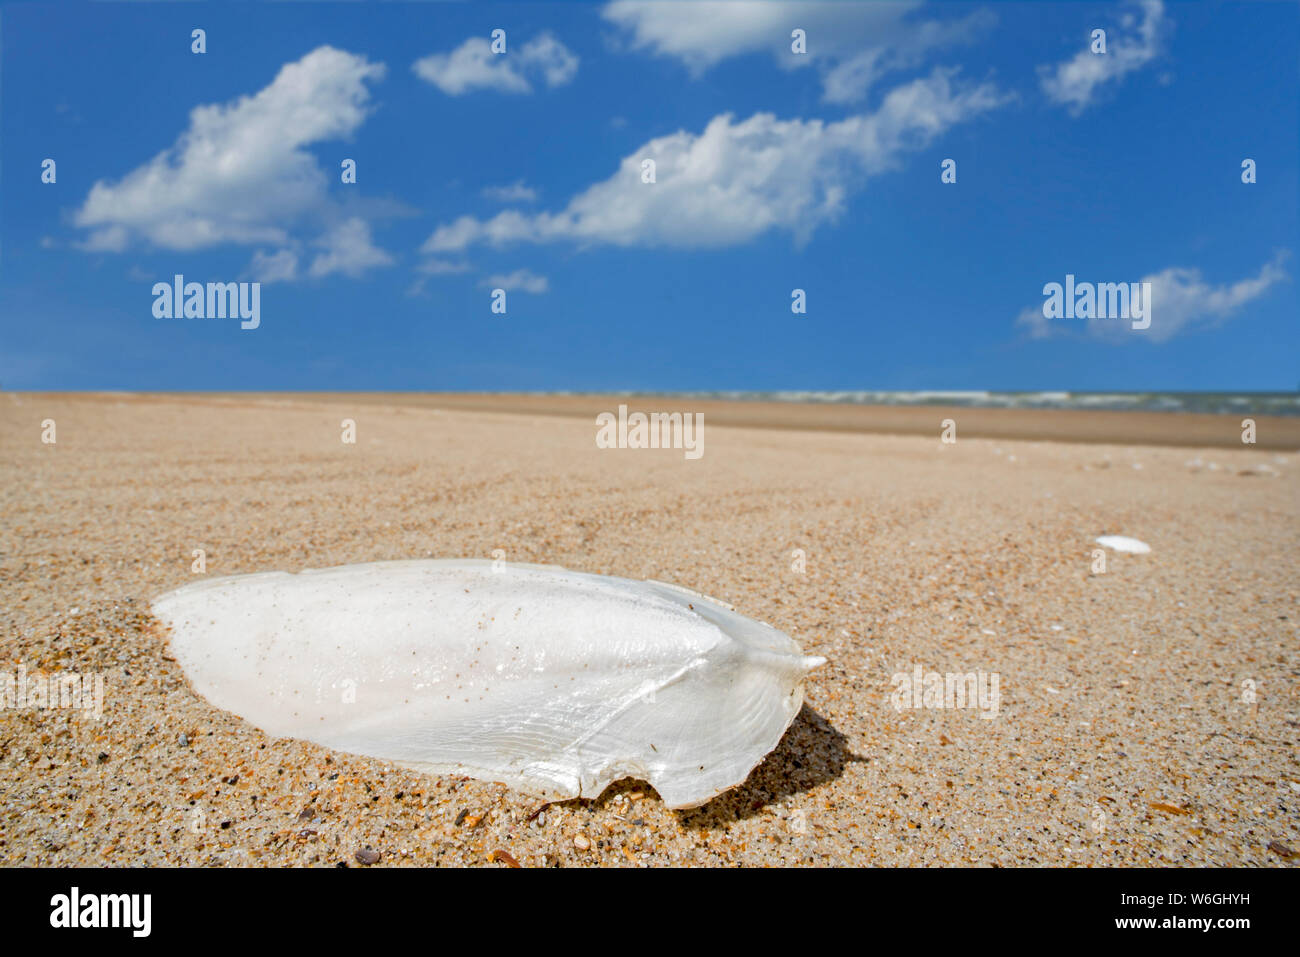 Cuttlebone gewaschen an Land am Sandstrand, Auftrieb Orgel und innere Schale der Gemeinsamen Europäischen Tintenfisch/cuttles (Sepia officinalis) Stockfoto